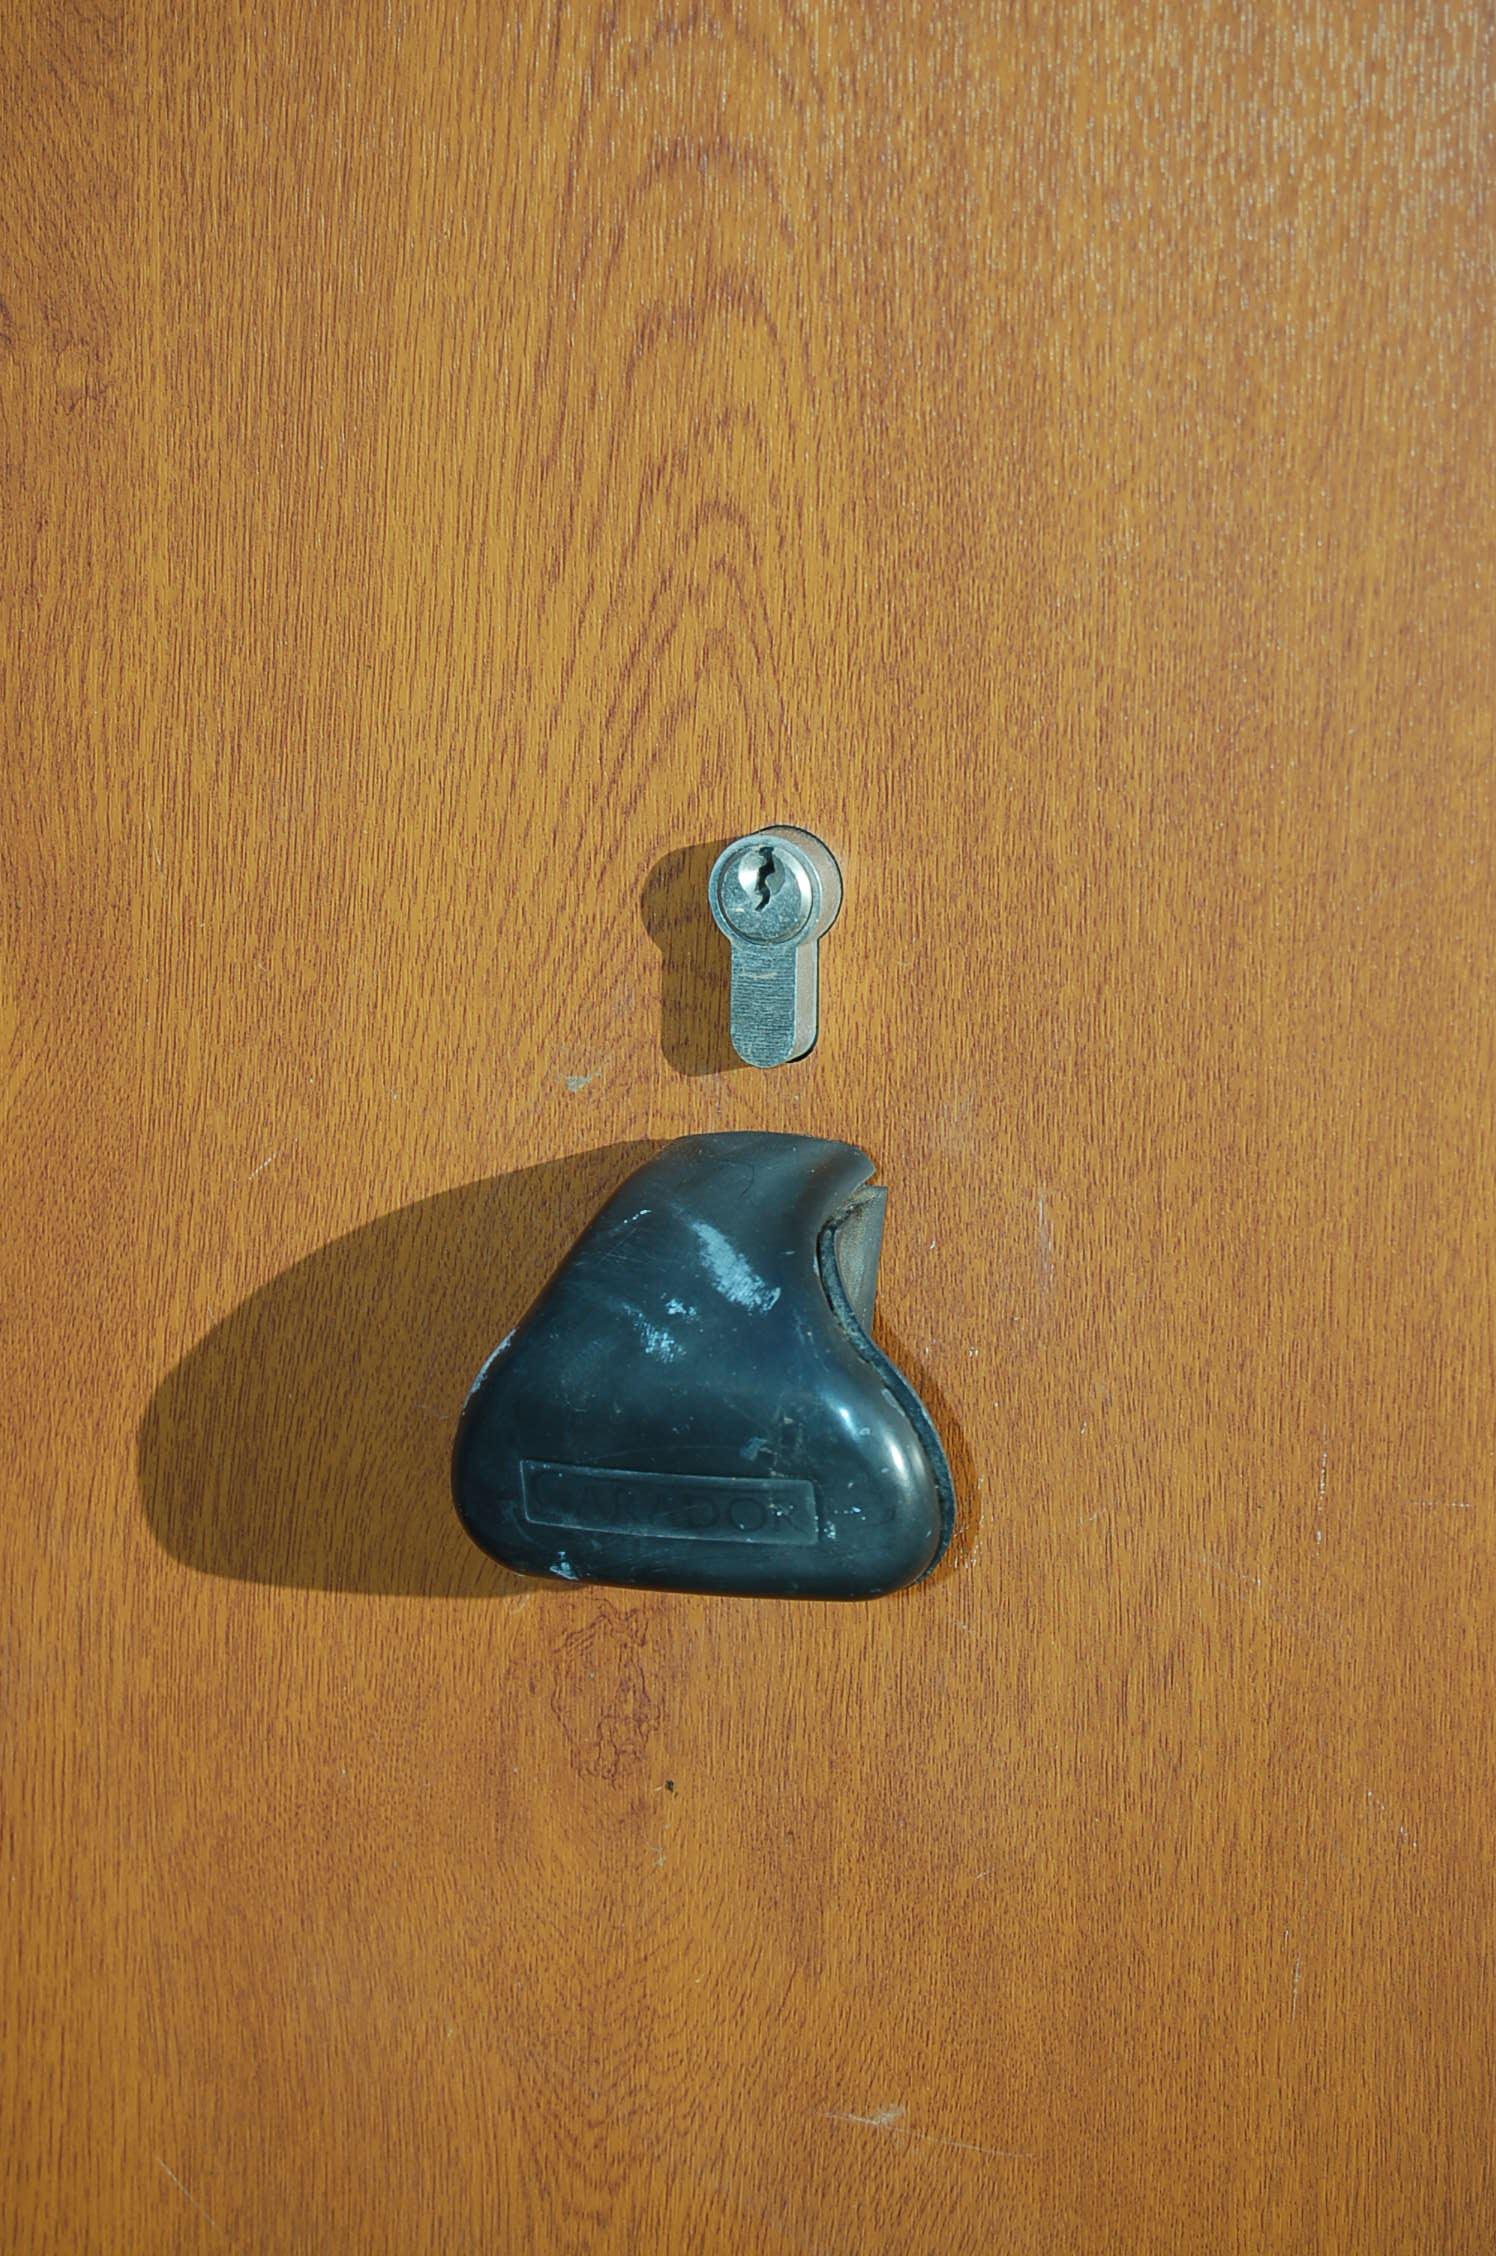 cj locksmiths garage door locks and handles